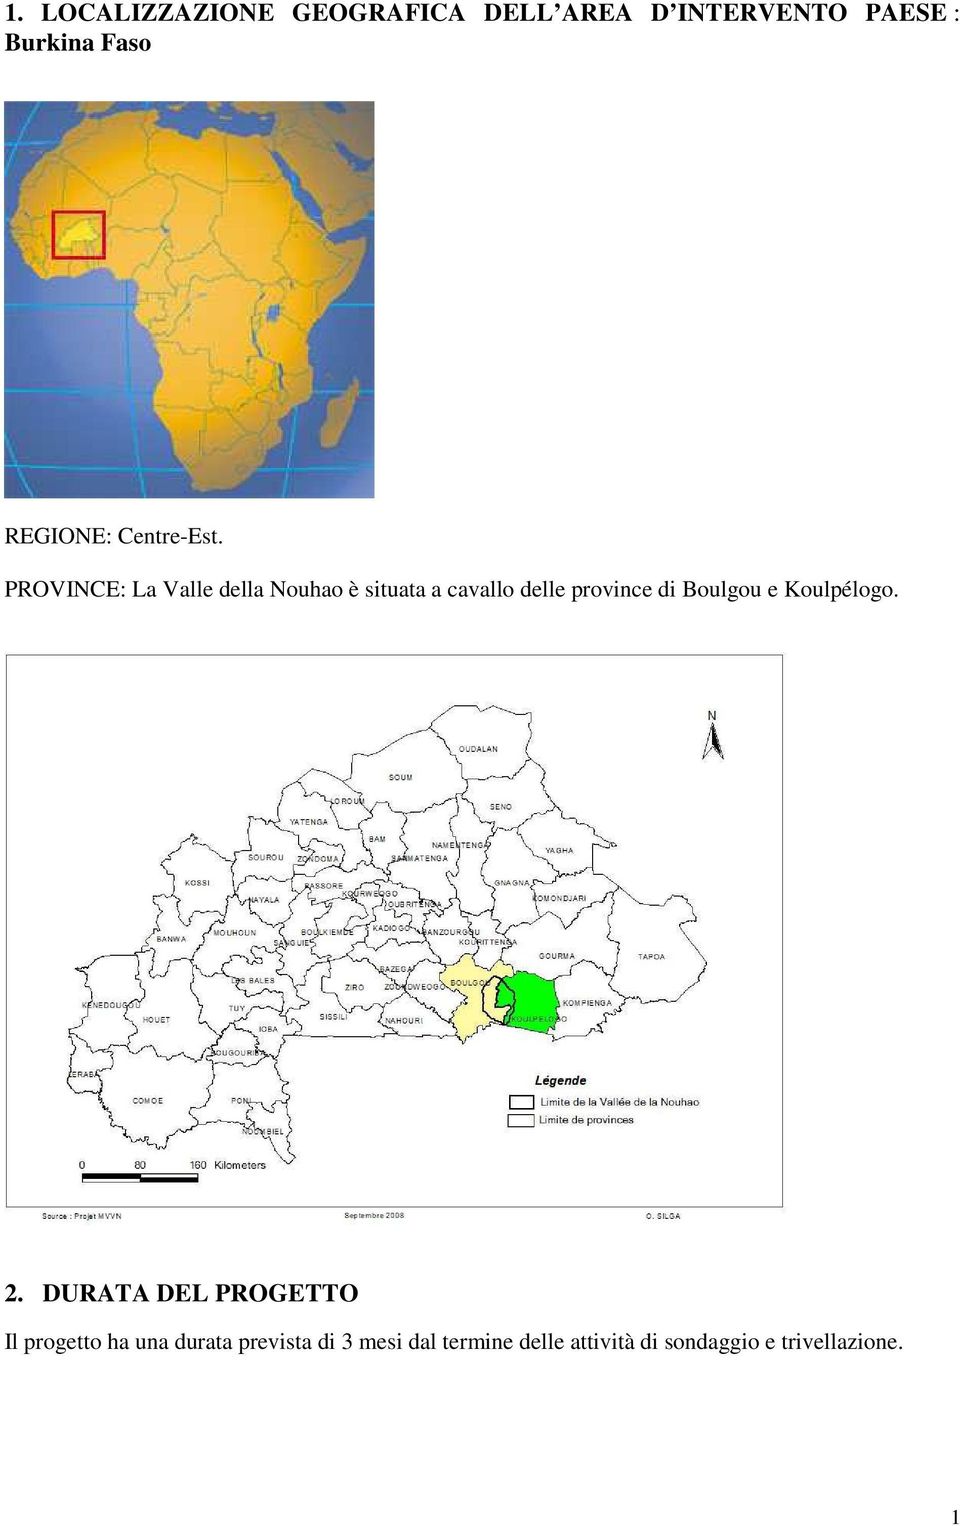 PROVINCE: La Valle della Nouhao è situata a cavallo delle province di Boulgou